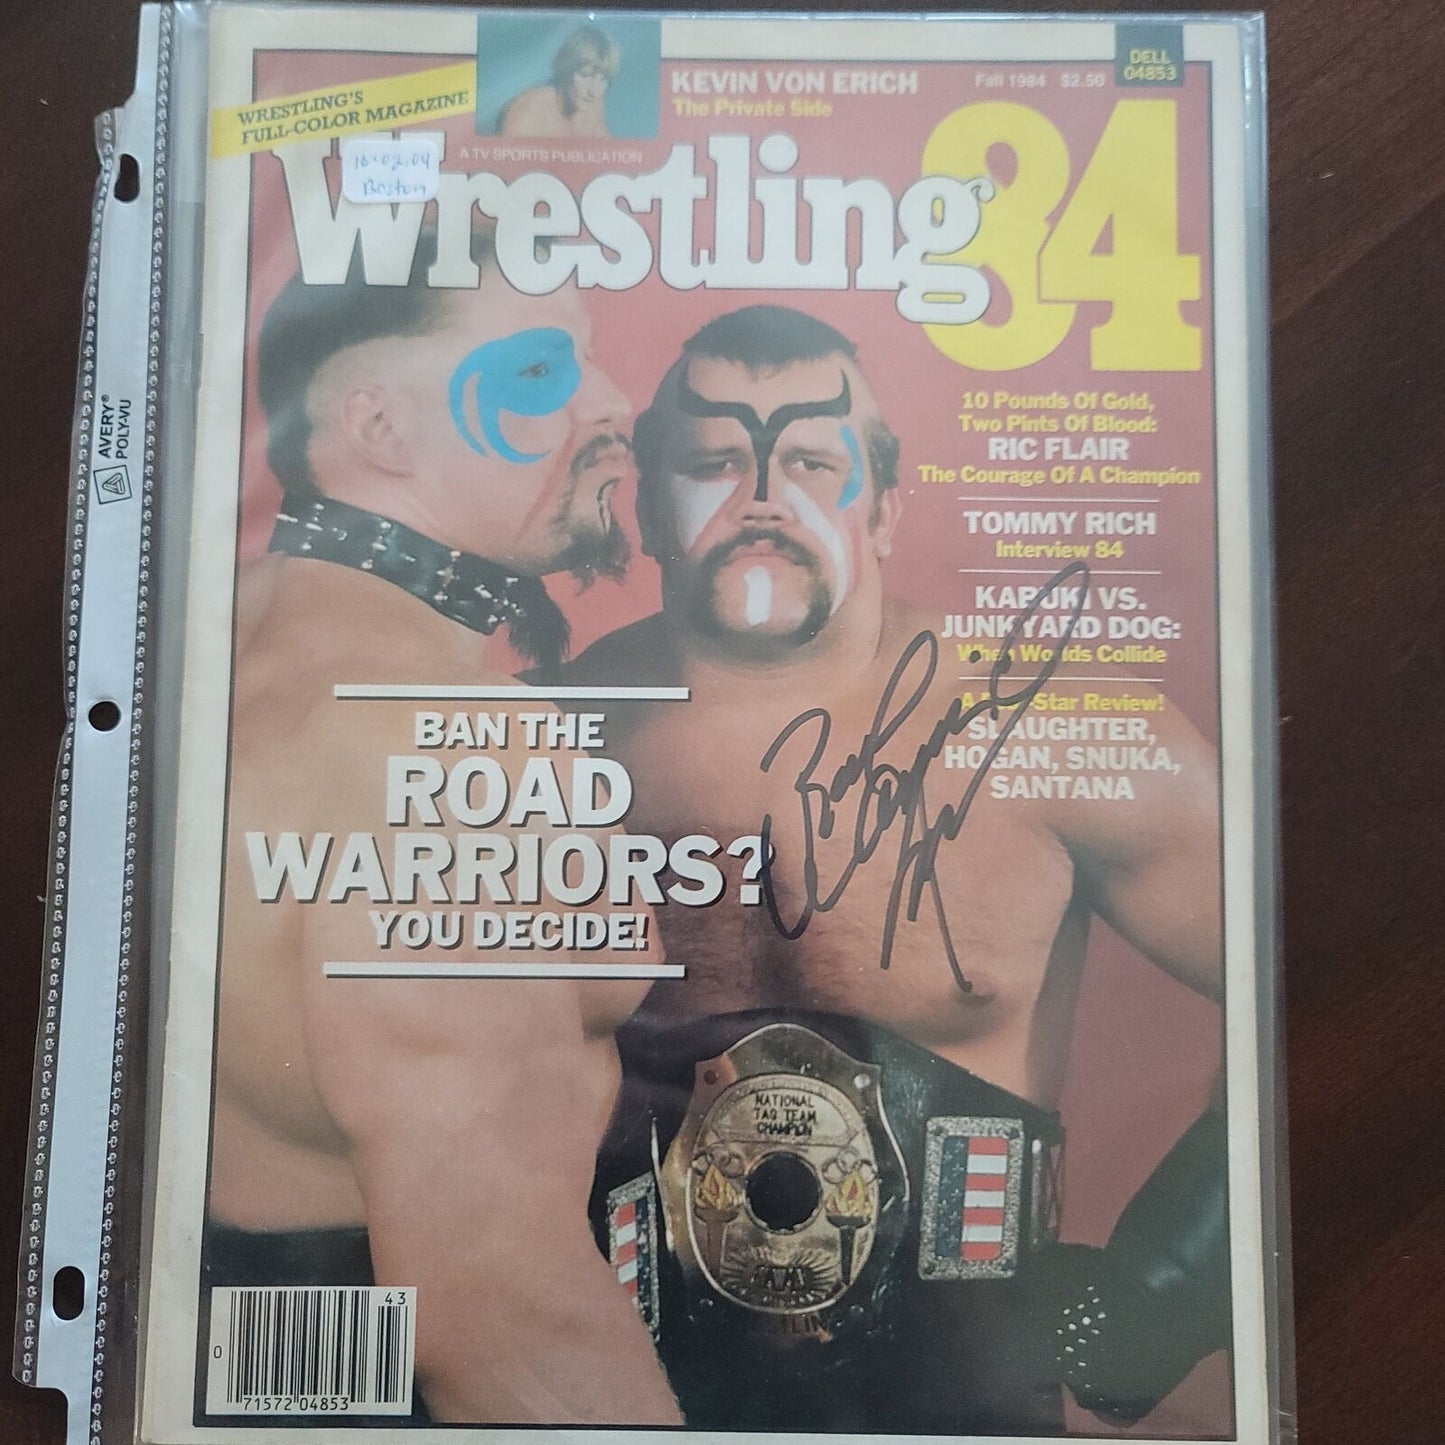 Animal Roadwarrior LOD (full magazine) NWA WCW cover signed auto autographed